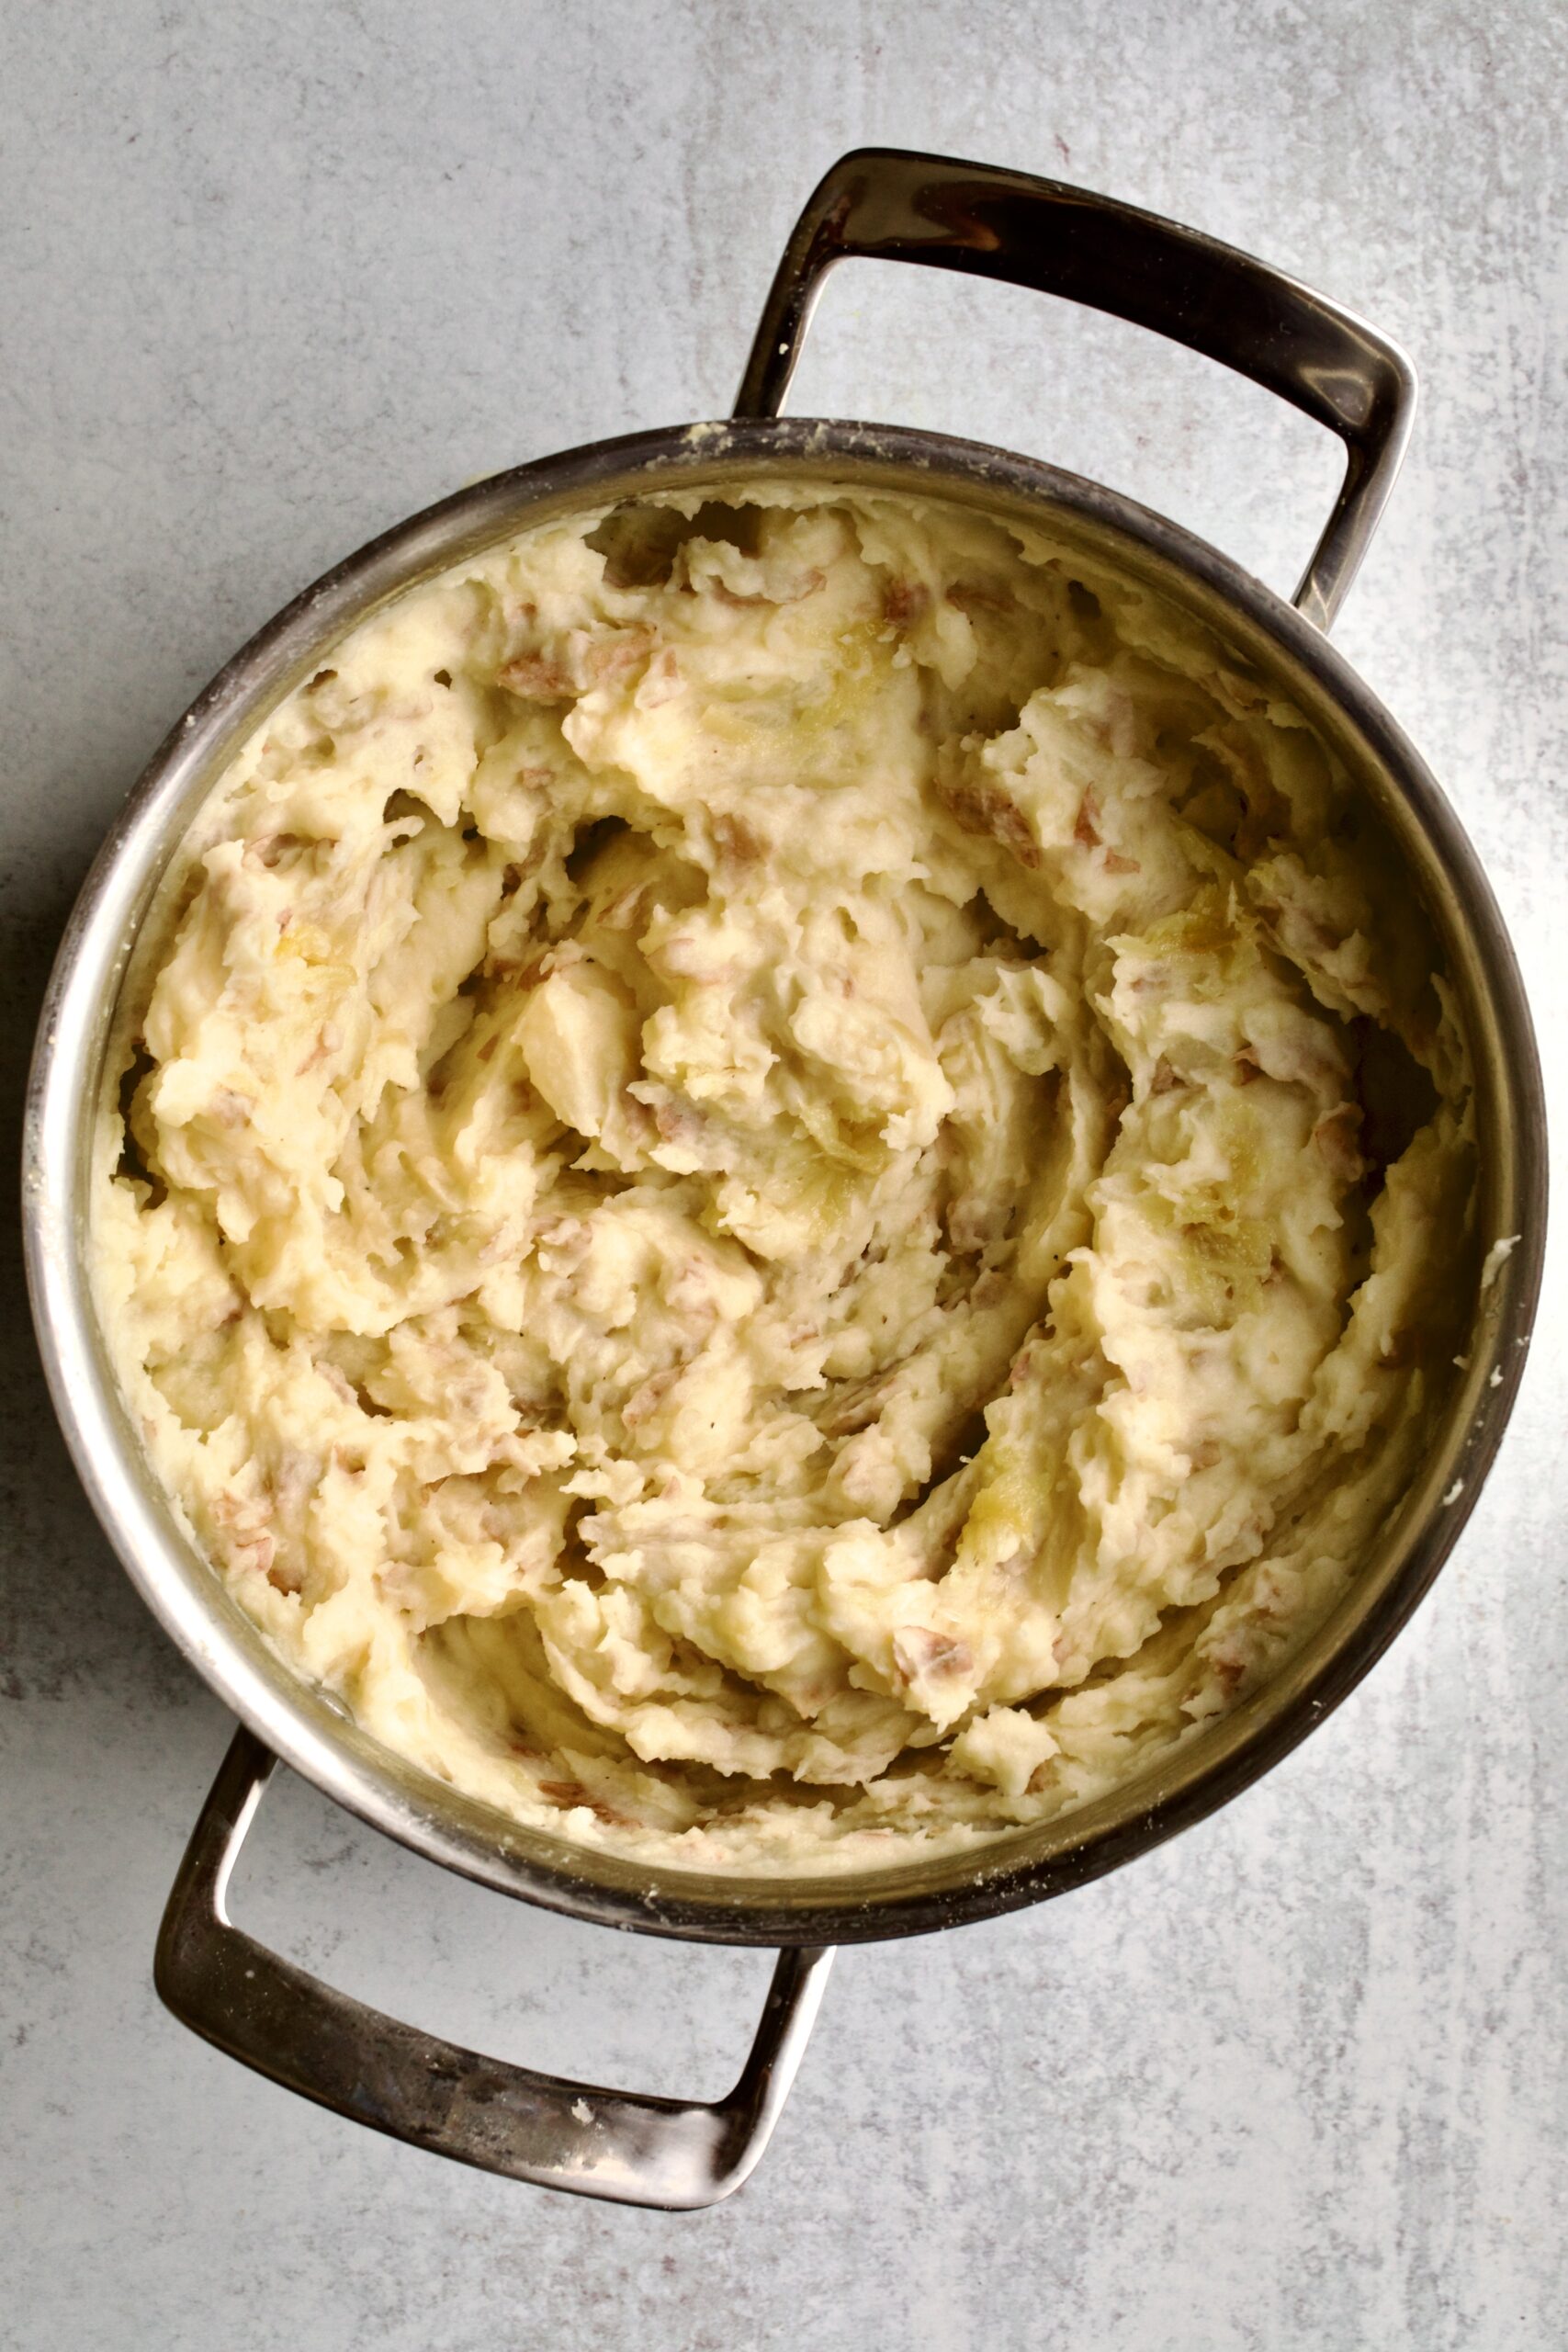 process for making redskin mashed potatoes- mashing potatoes in pot